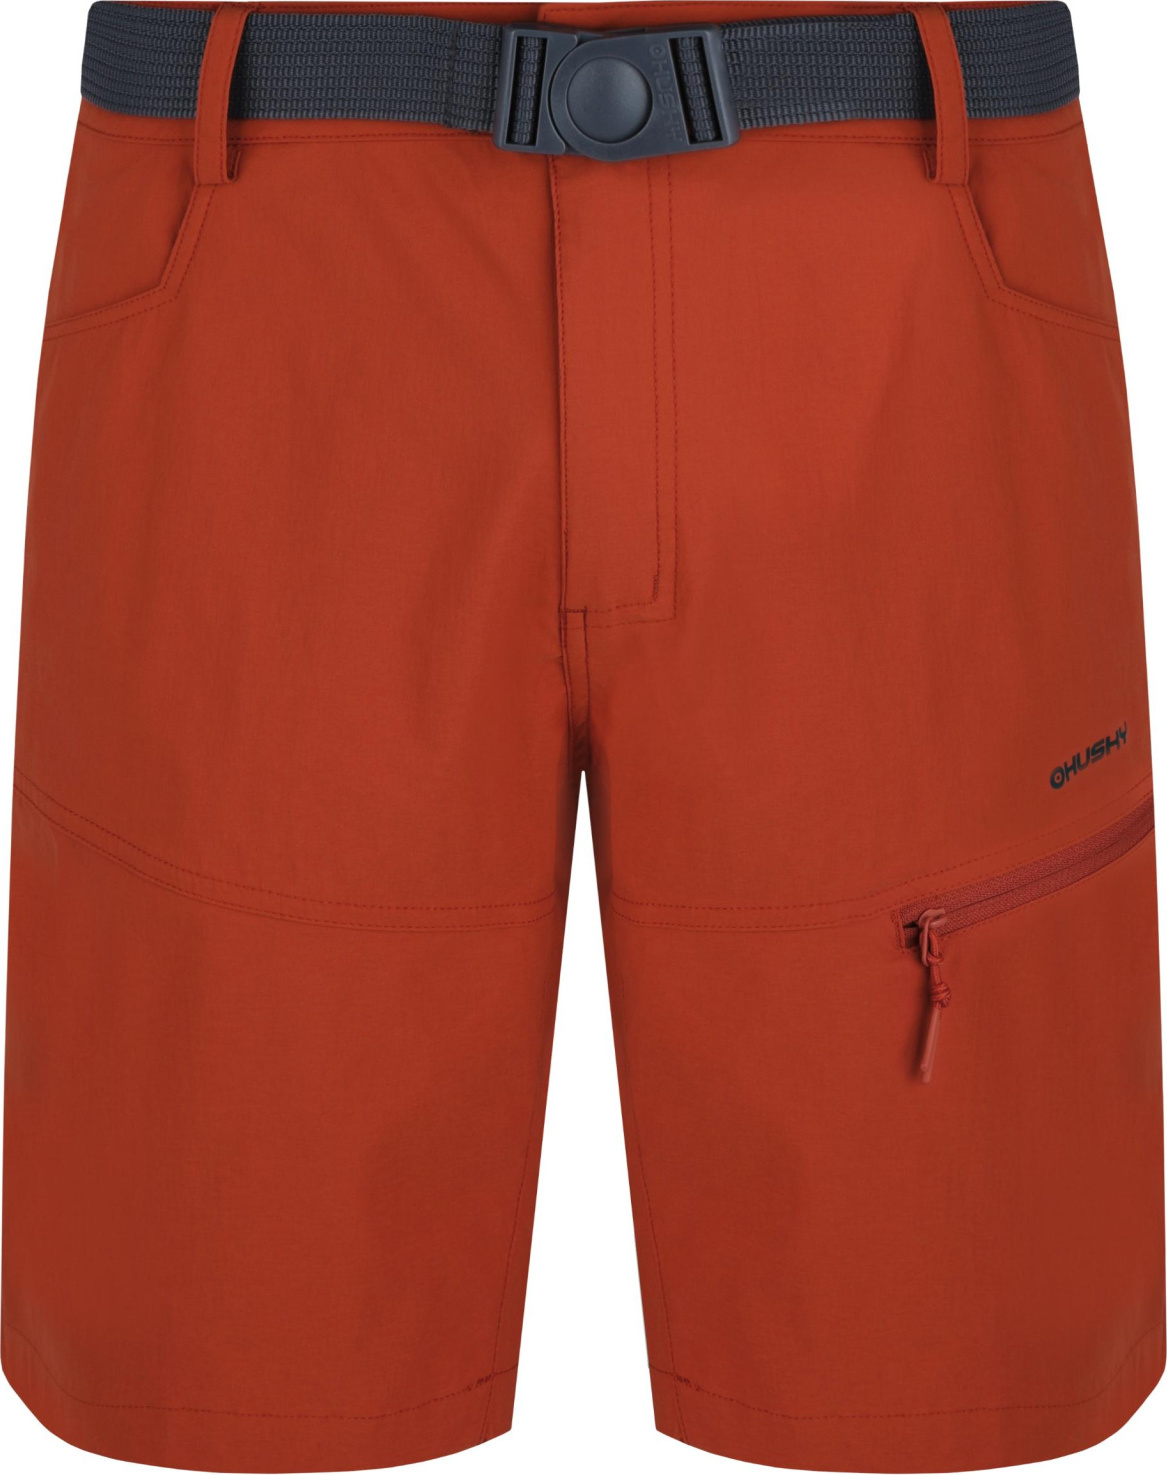 Pánské funkční šortky HUSKY Kimbi oranžové Velikost: L